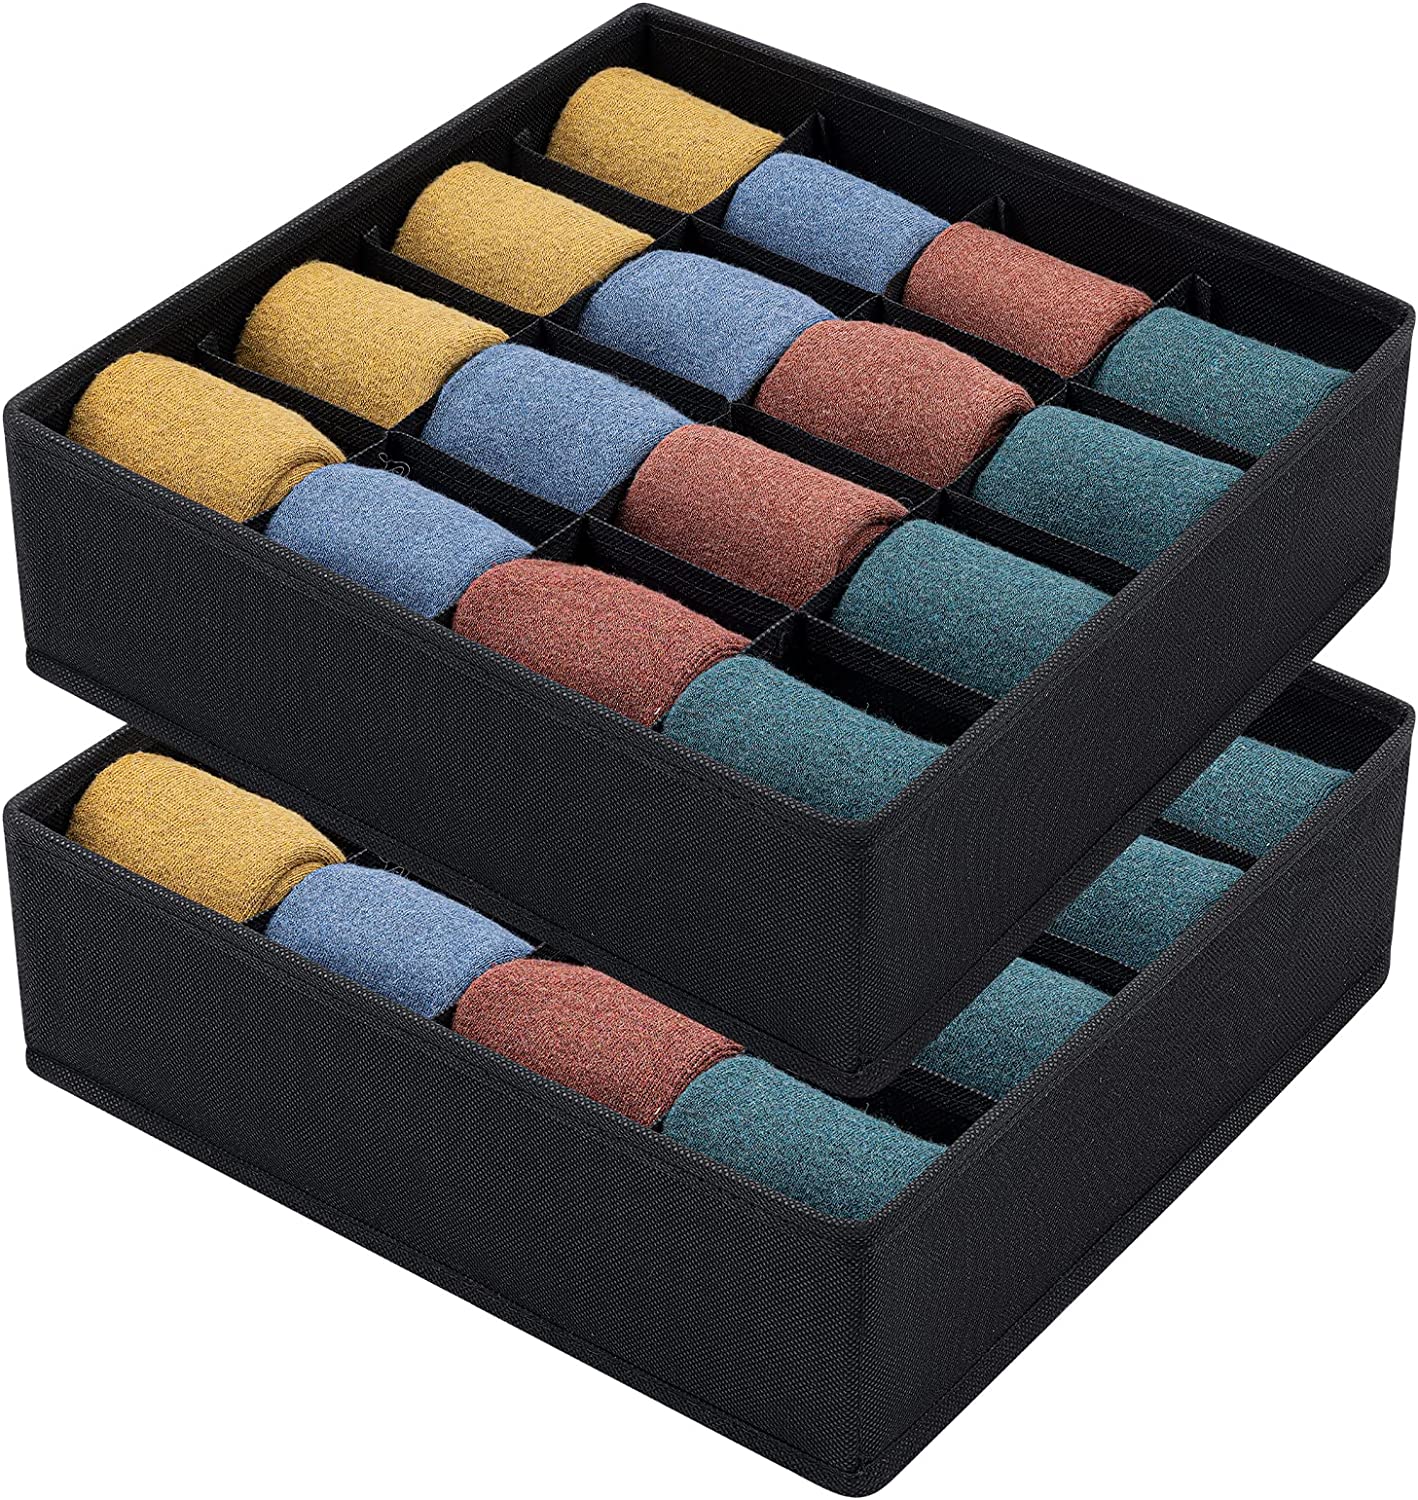 Joyoldelf 2 Stück Aufbewahrungsboxen für Socken und Unterwäsche,16 Zellen Faltbare Boxen